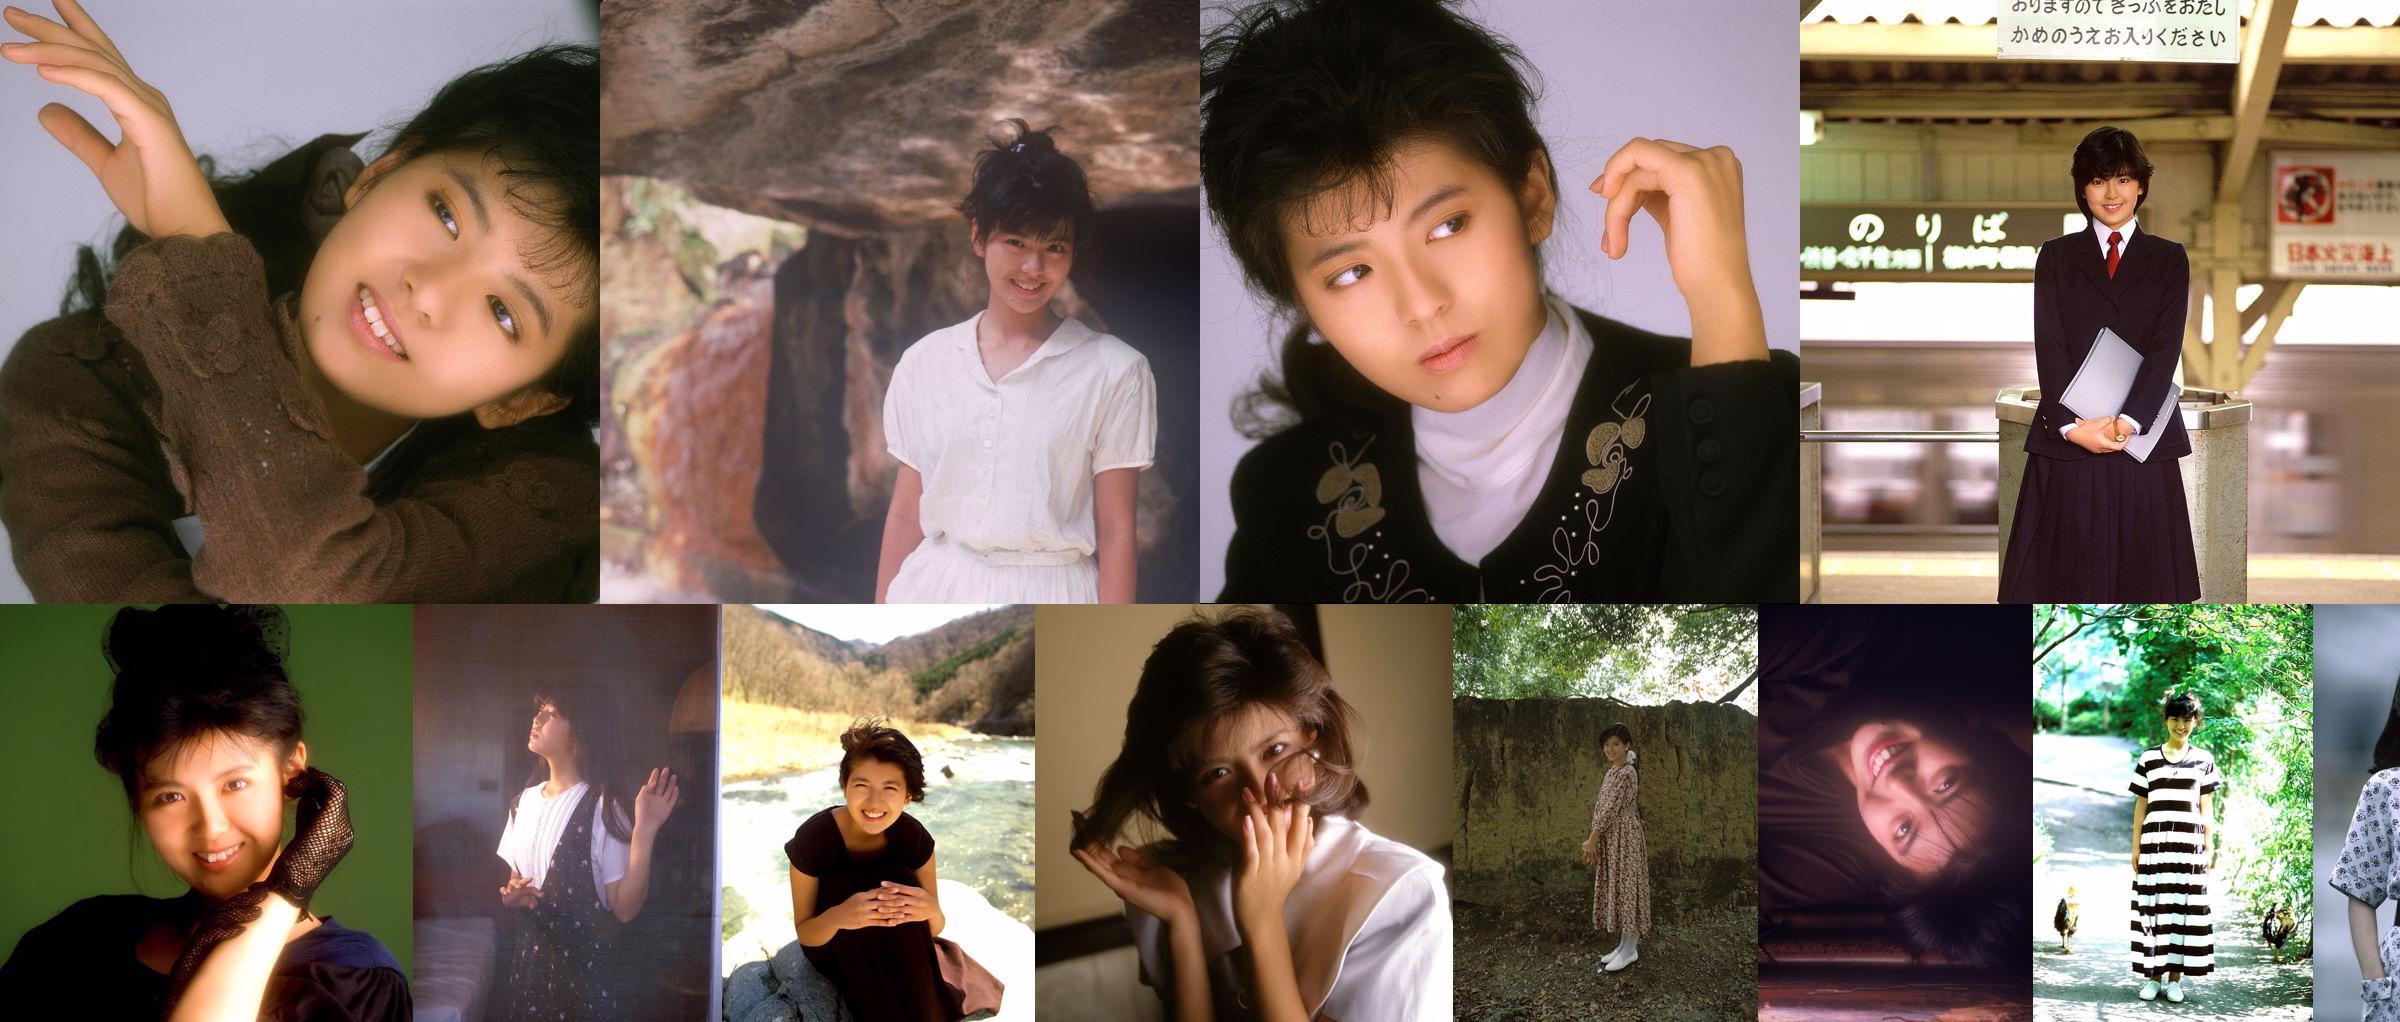 [NS Eyes] SF-No.215 Yoko Minamino Yoko Minamino No.f02dea Strona 1